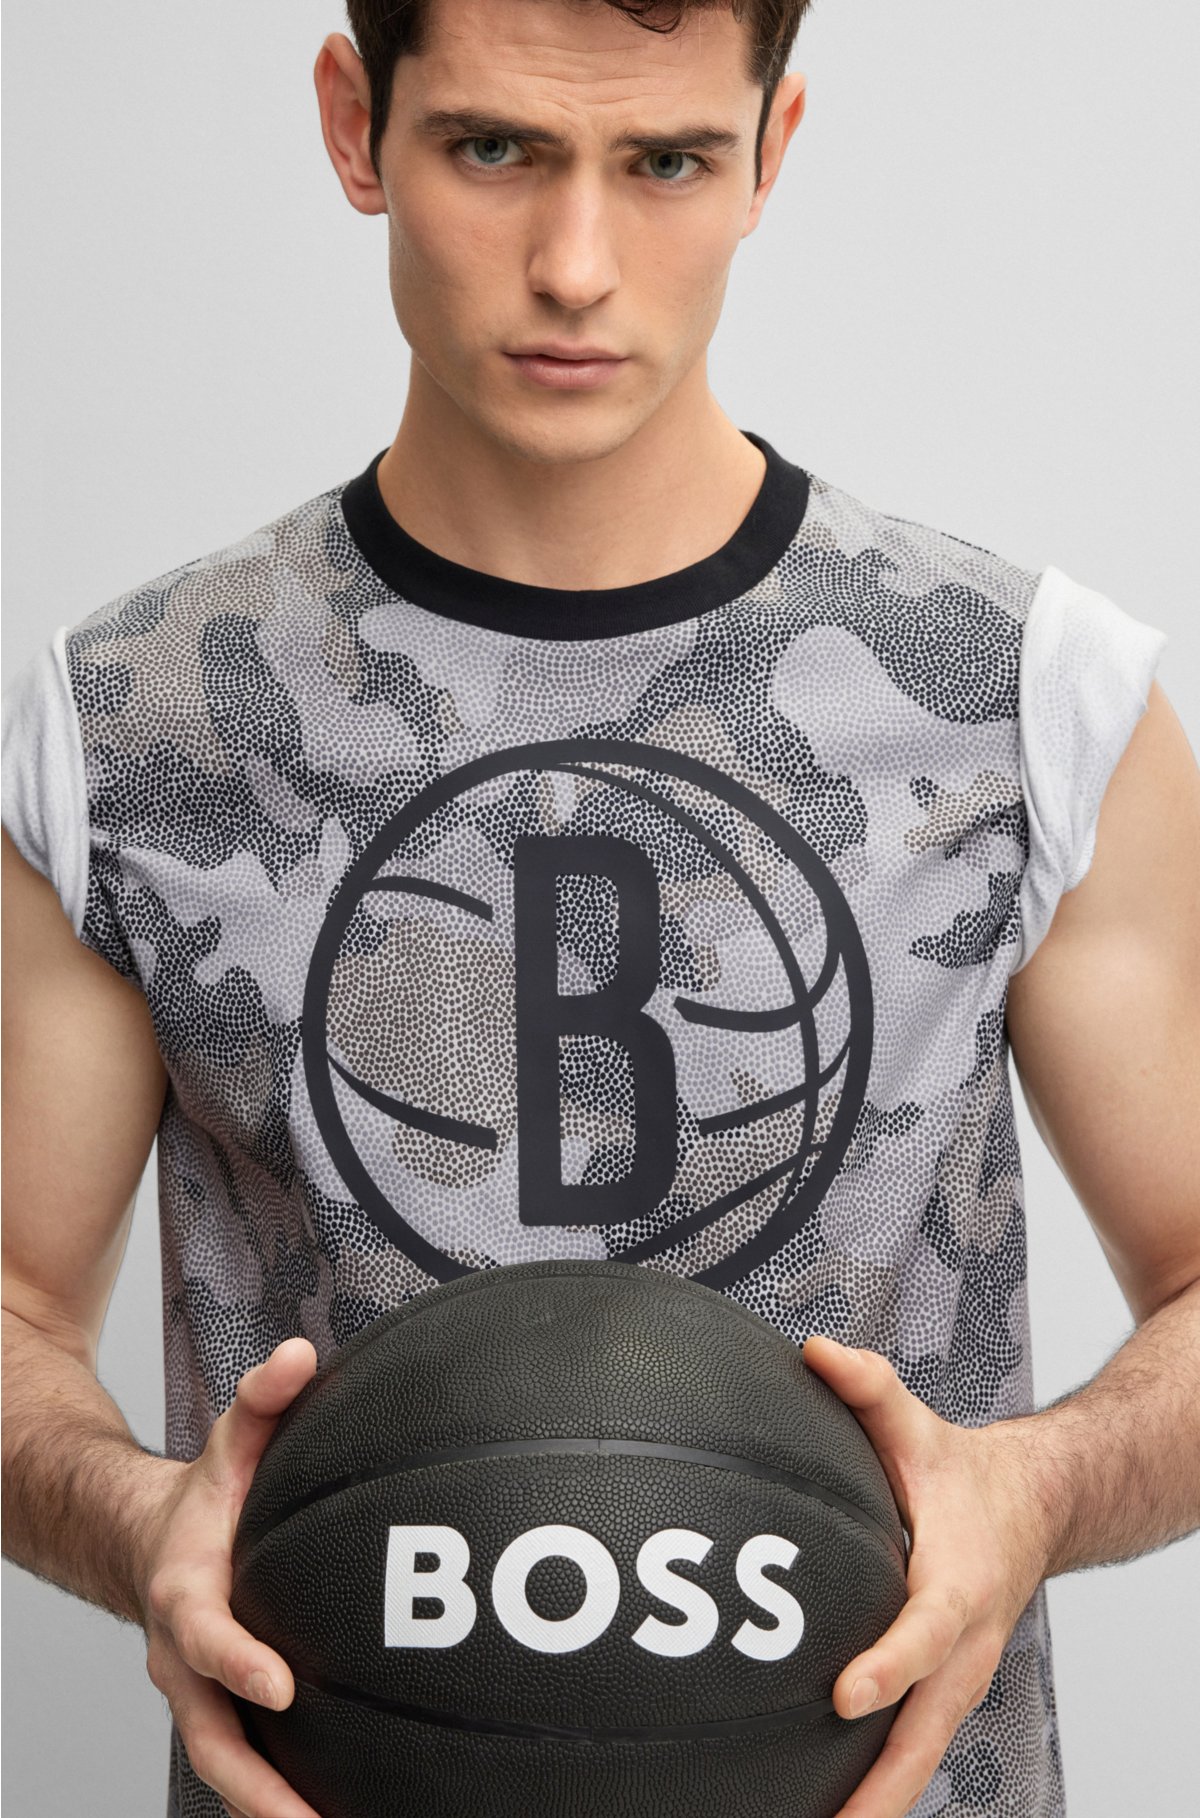 Cotton Sleeveless Basketball Jersey, Size: XL